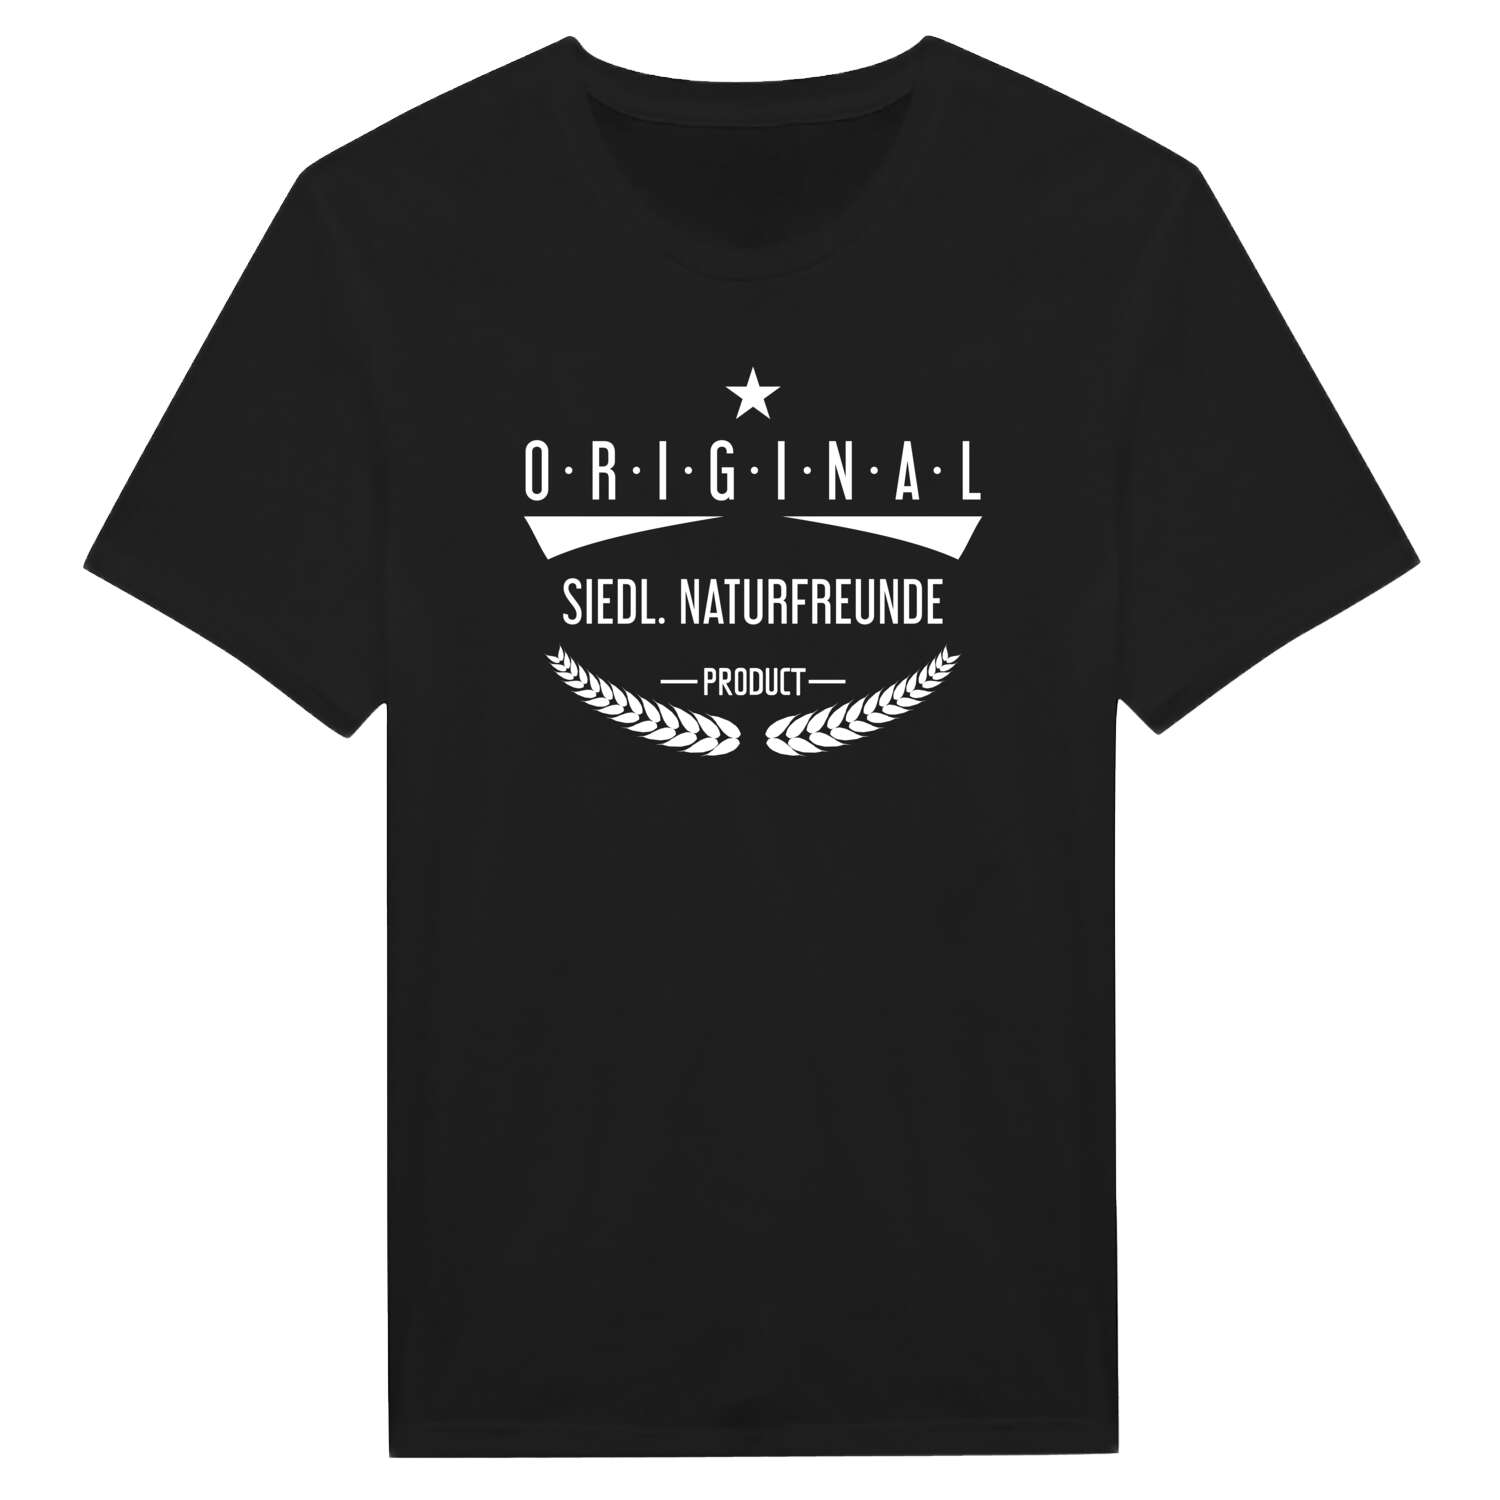 Siedl. Naturfreunde T-Shirt »Original Product«